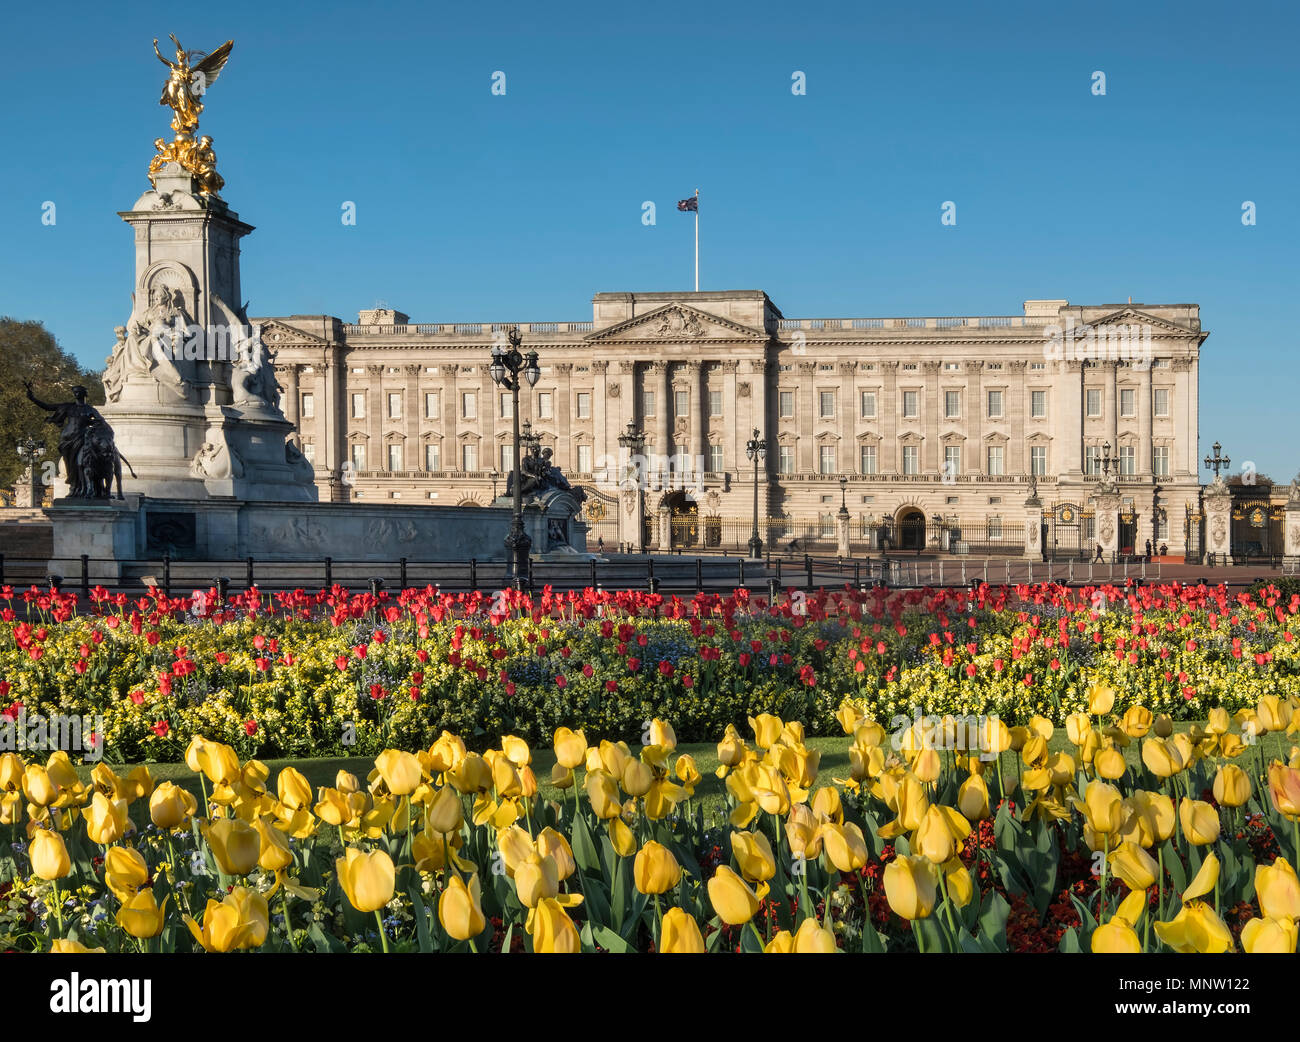 Der Buckingham Palace und das Victoria Memorial im Frühjahr, London, England, Großbritannien Stockfoto